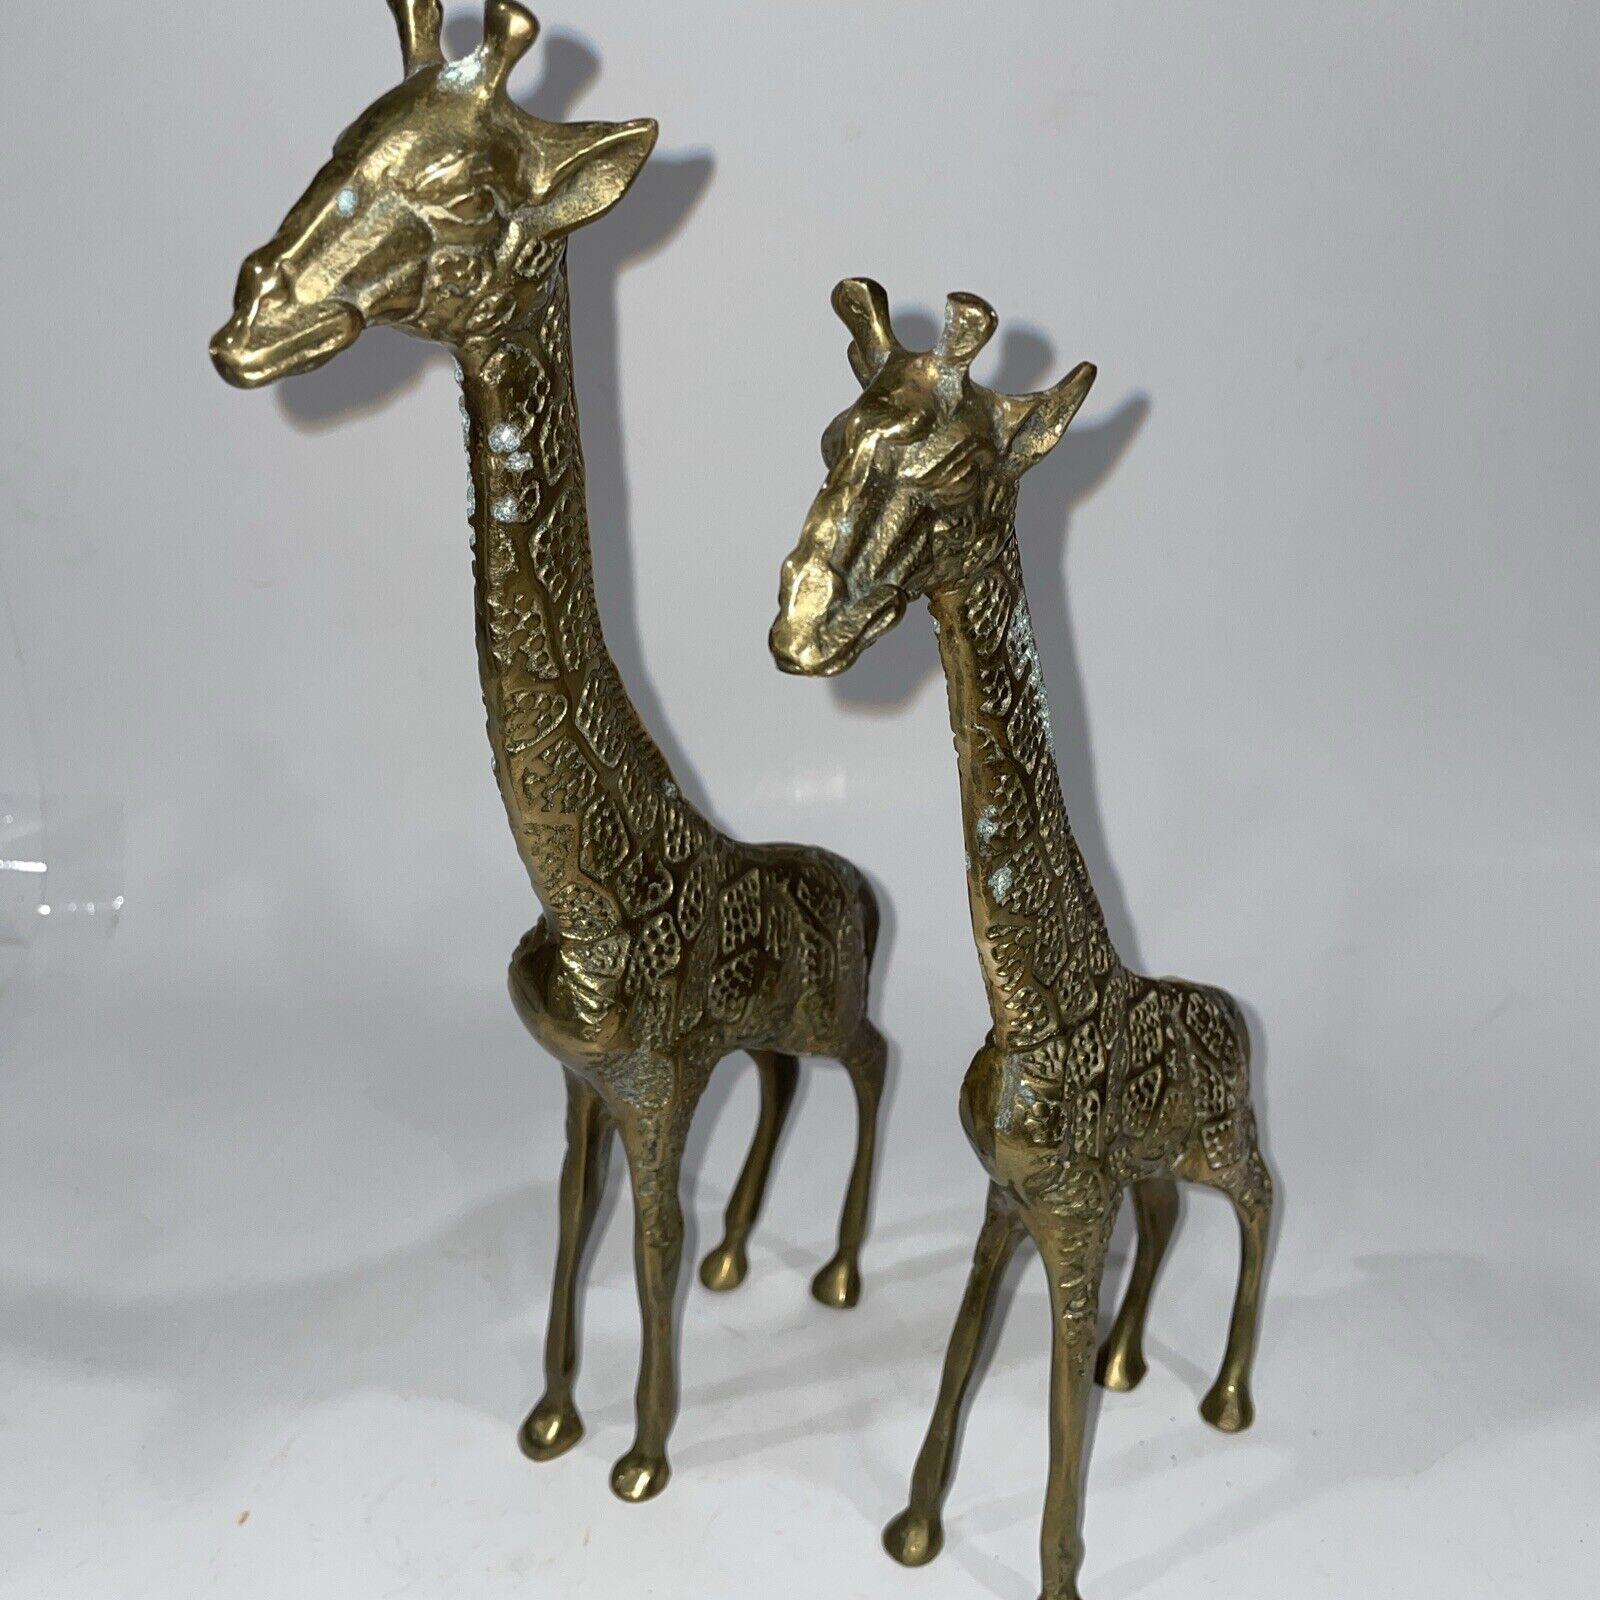 Pair of Vintage Brass Giraffes 10”, 11.5” Tall Solid Textured Brass Freestanding